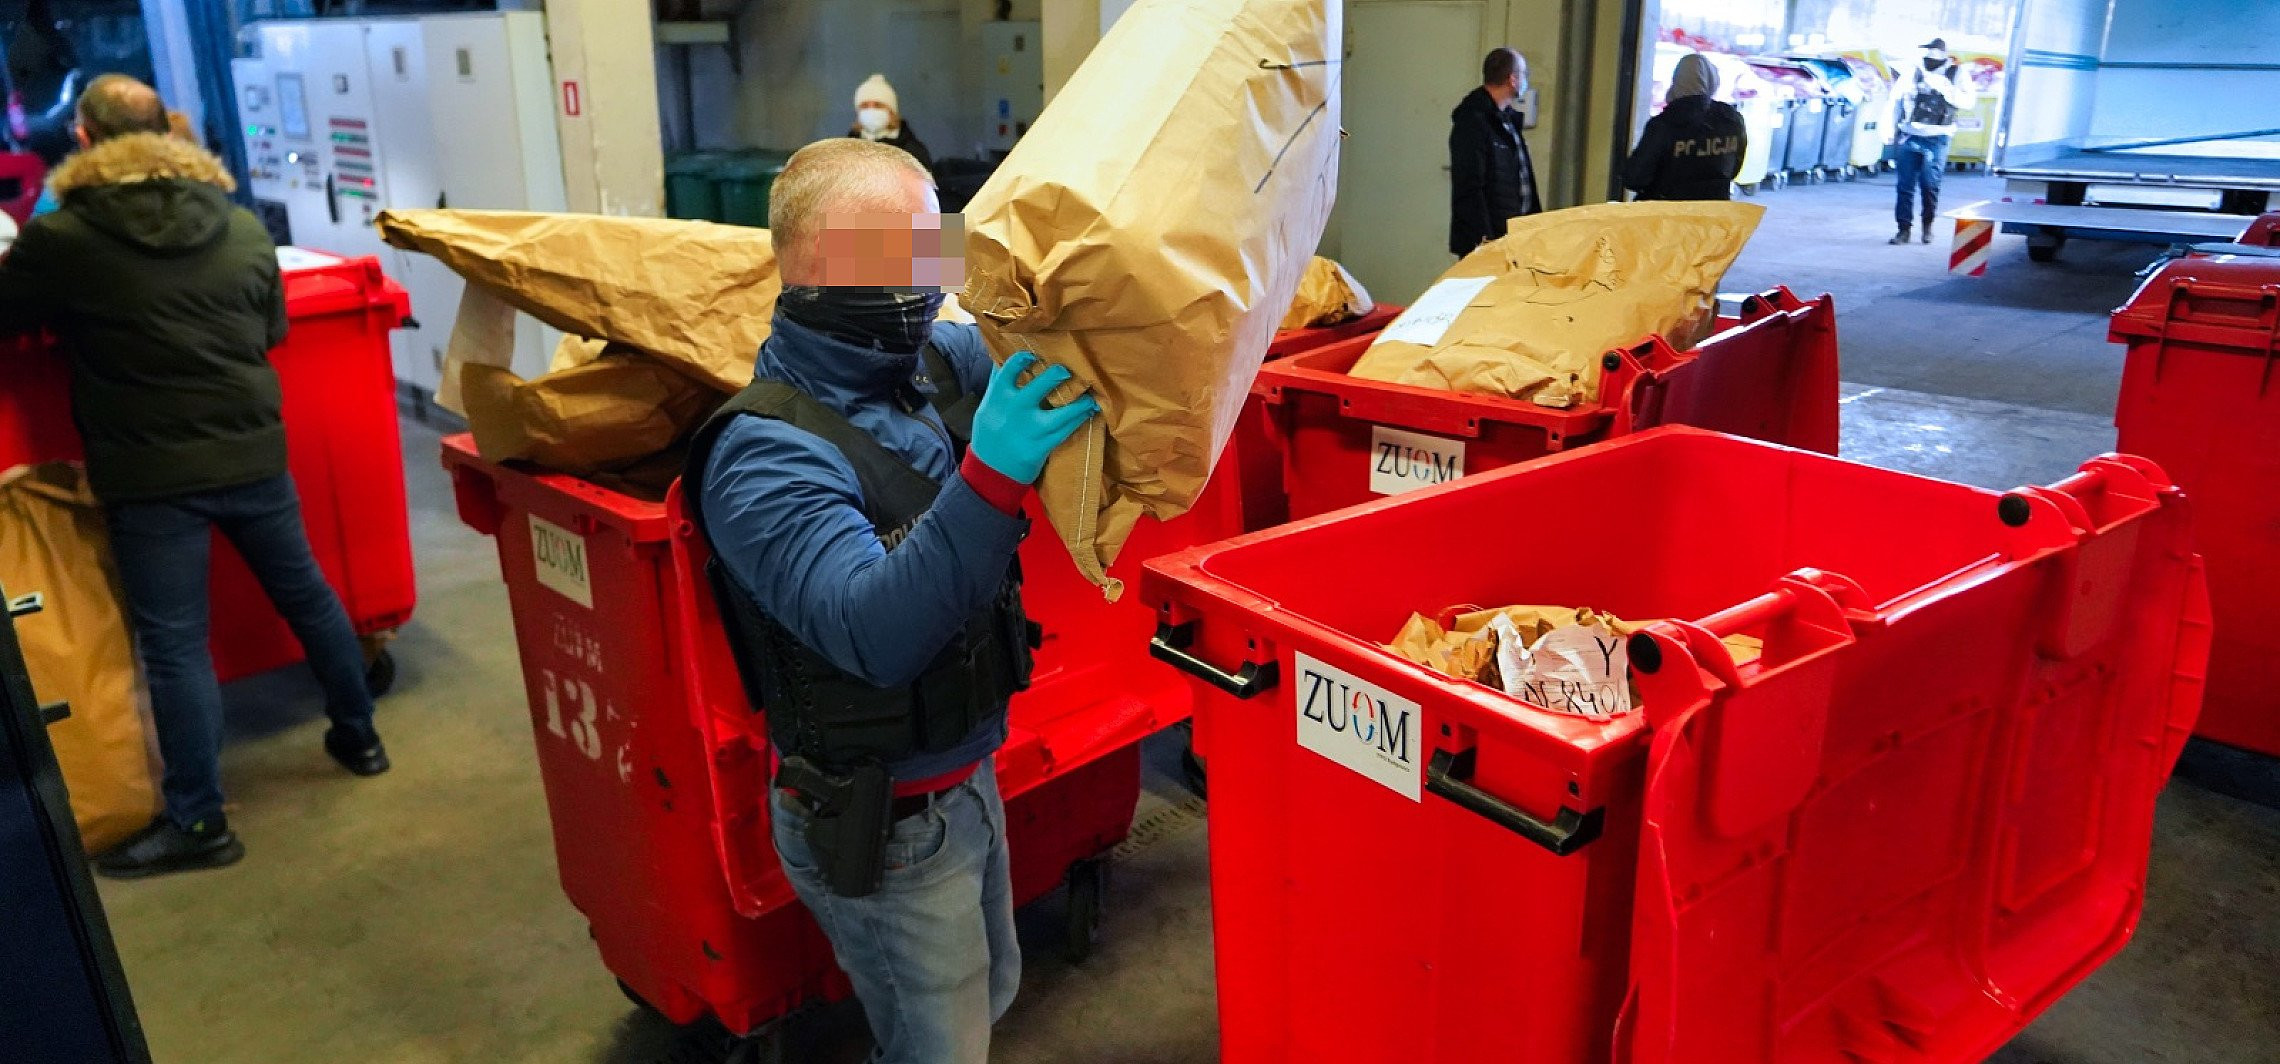 Kujawsko-Pomorskie - Ponad 100 kg narkotyków poszło z dymem